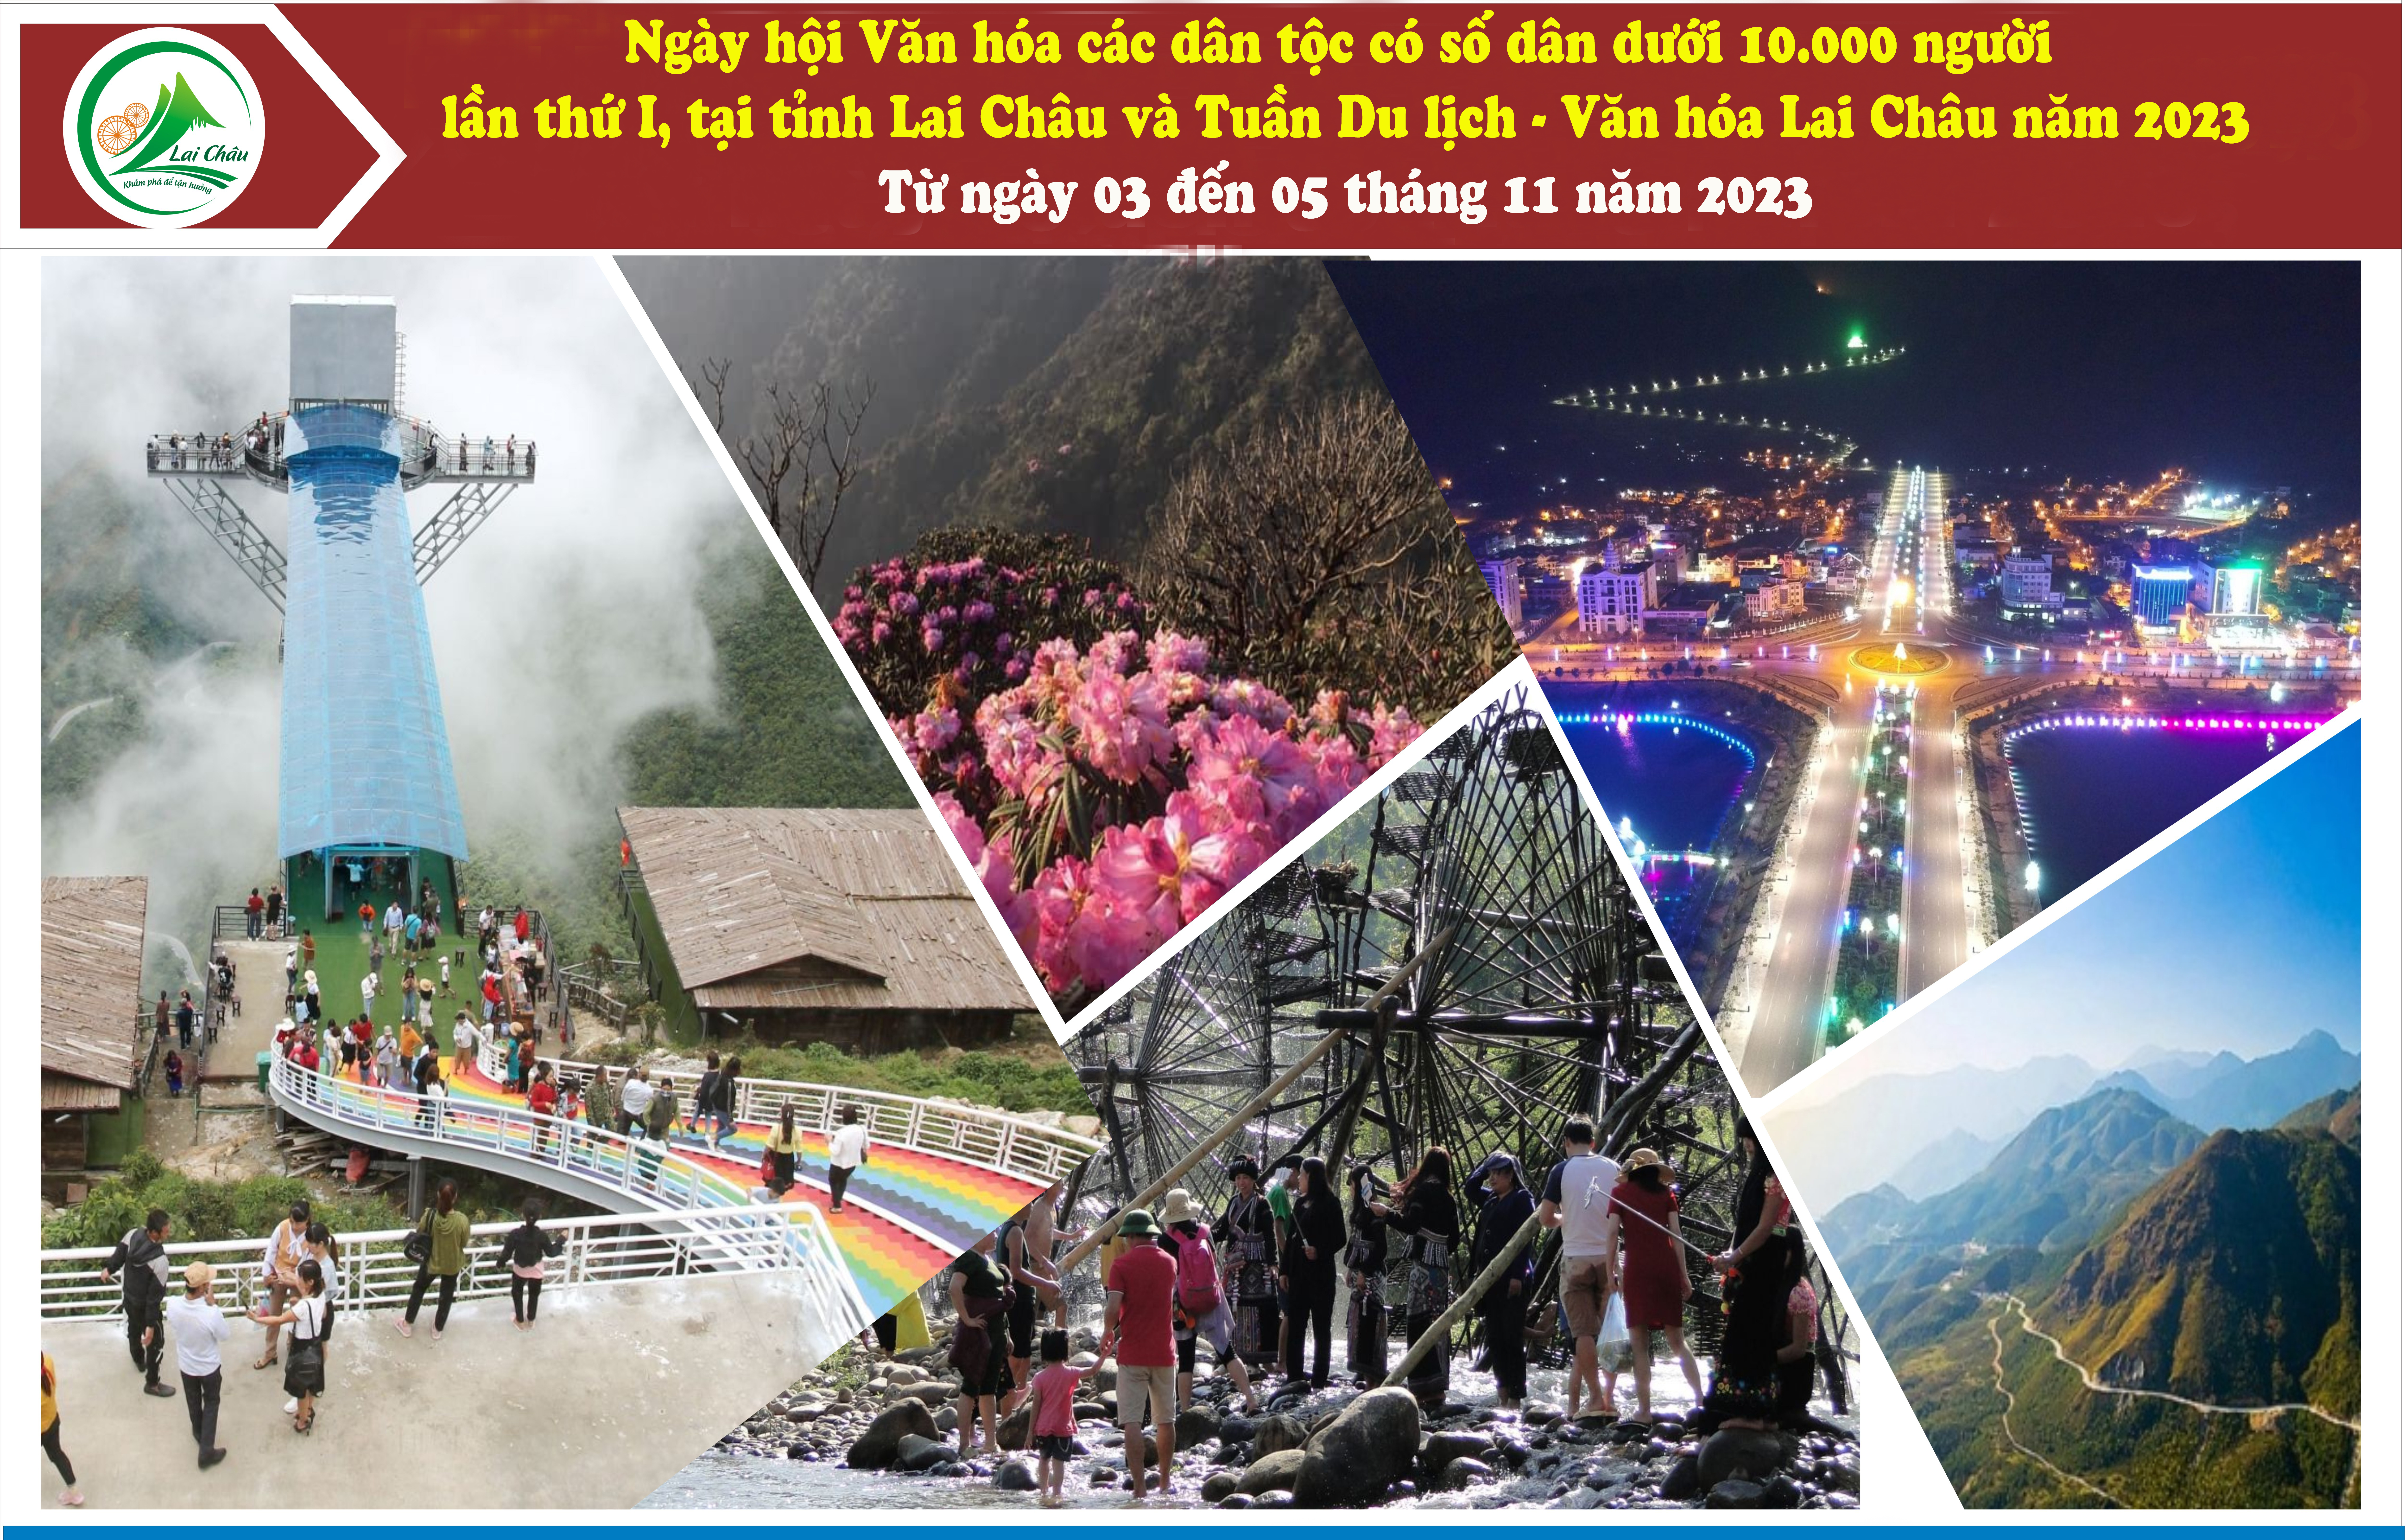 Lai Châu đã sẵn sàng cho Ngày hội văn hóa các dân tộc có số dân dưới 10.000 người  lần thứ nhất, tại tỉnh Lai Châu  và Tuần Du lịch – Văn hóa Lai Châu năm 2023